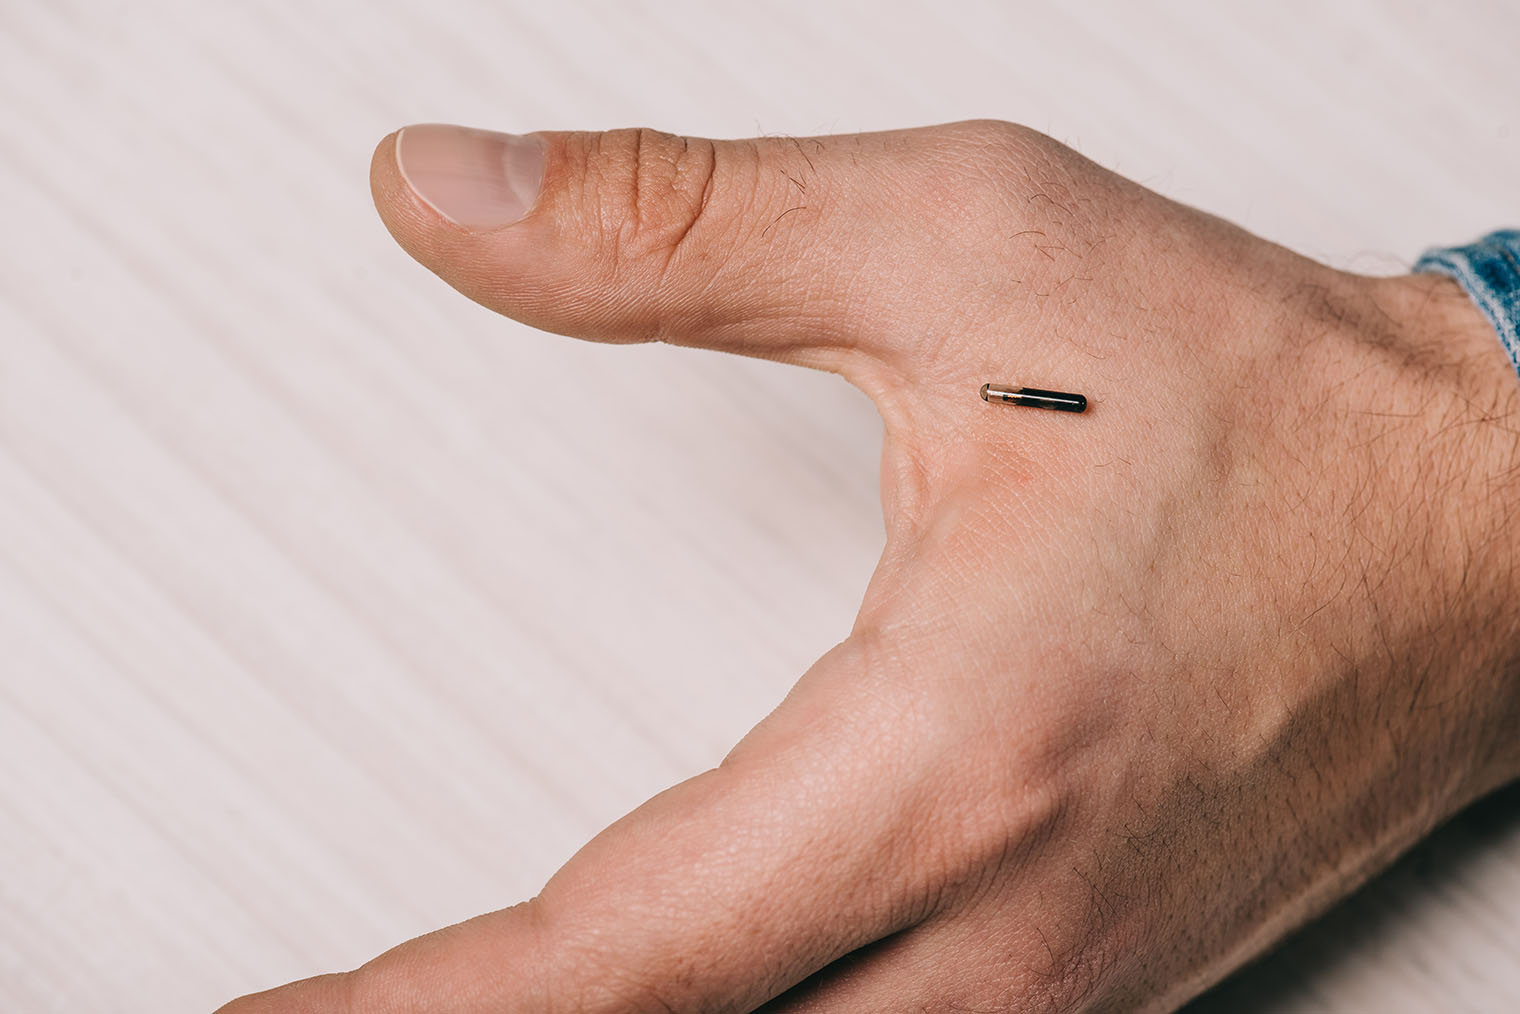 Стандартный размер микрочипа — 2 × 12 мм, но бывают модели еще меньше. Животному они никак не мешают. Источник: LightField Studios / Shutterstock / FOTODOM